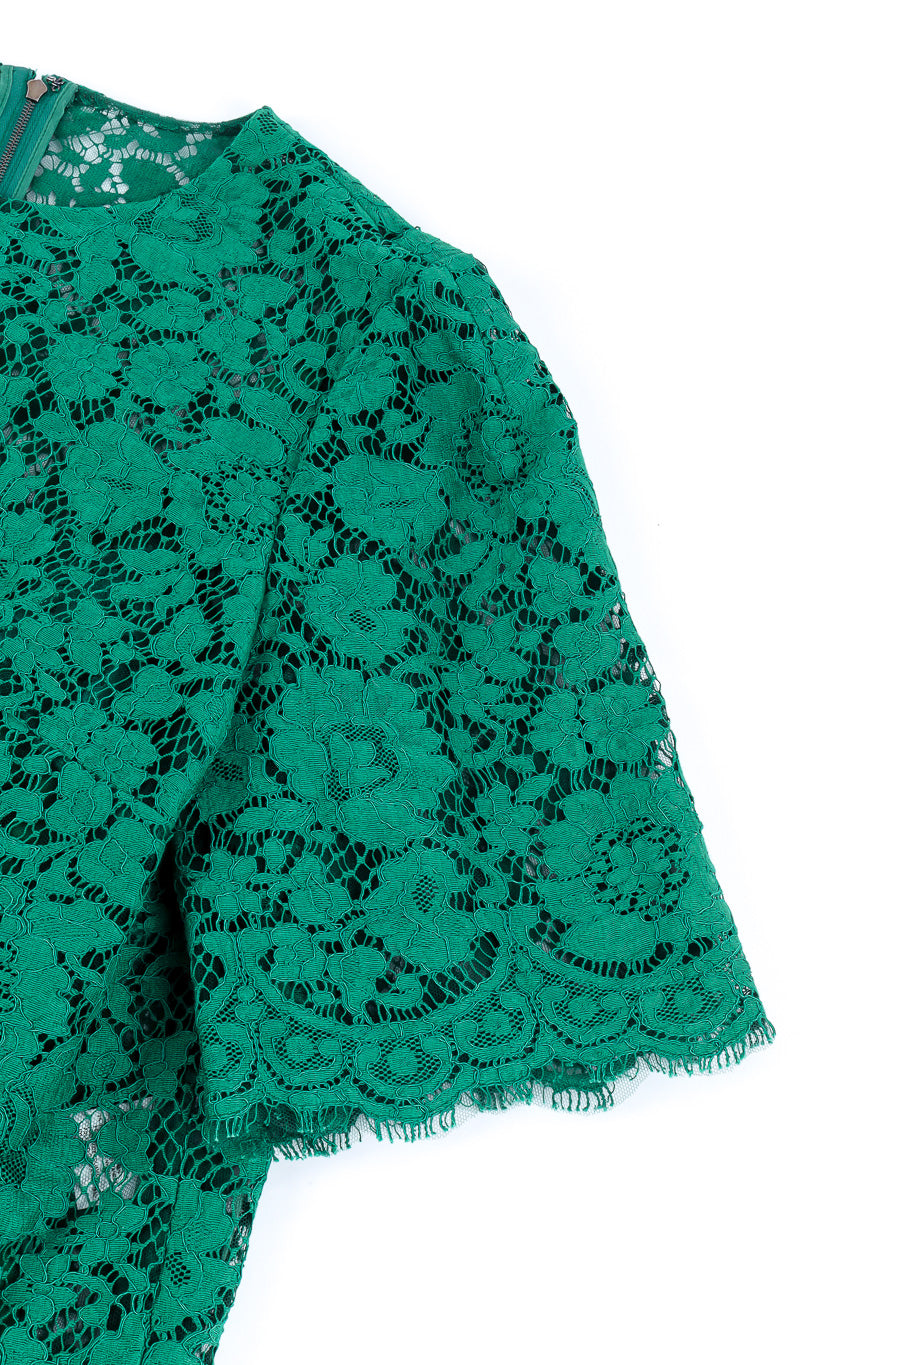 Dolce & Gabbana soutache lace top sleeve detail @recessla